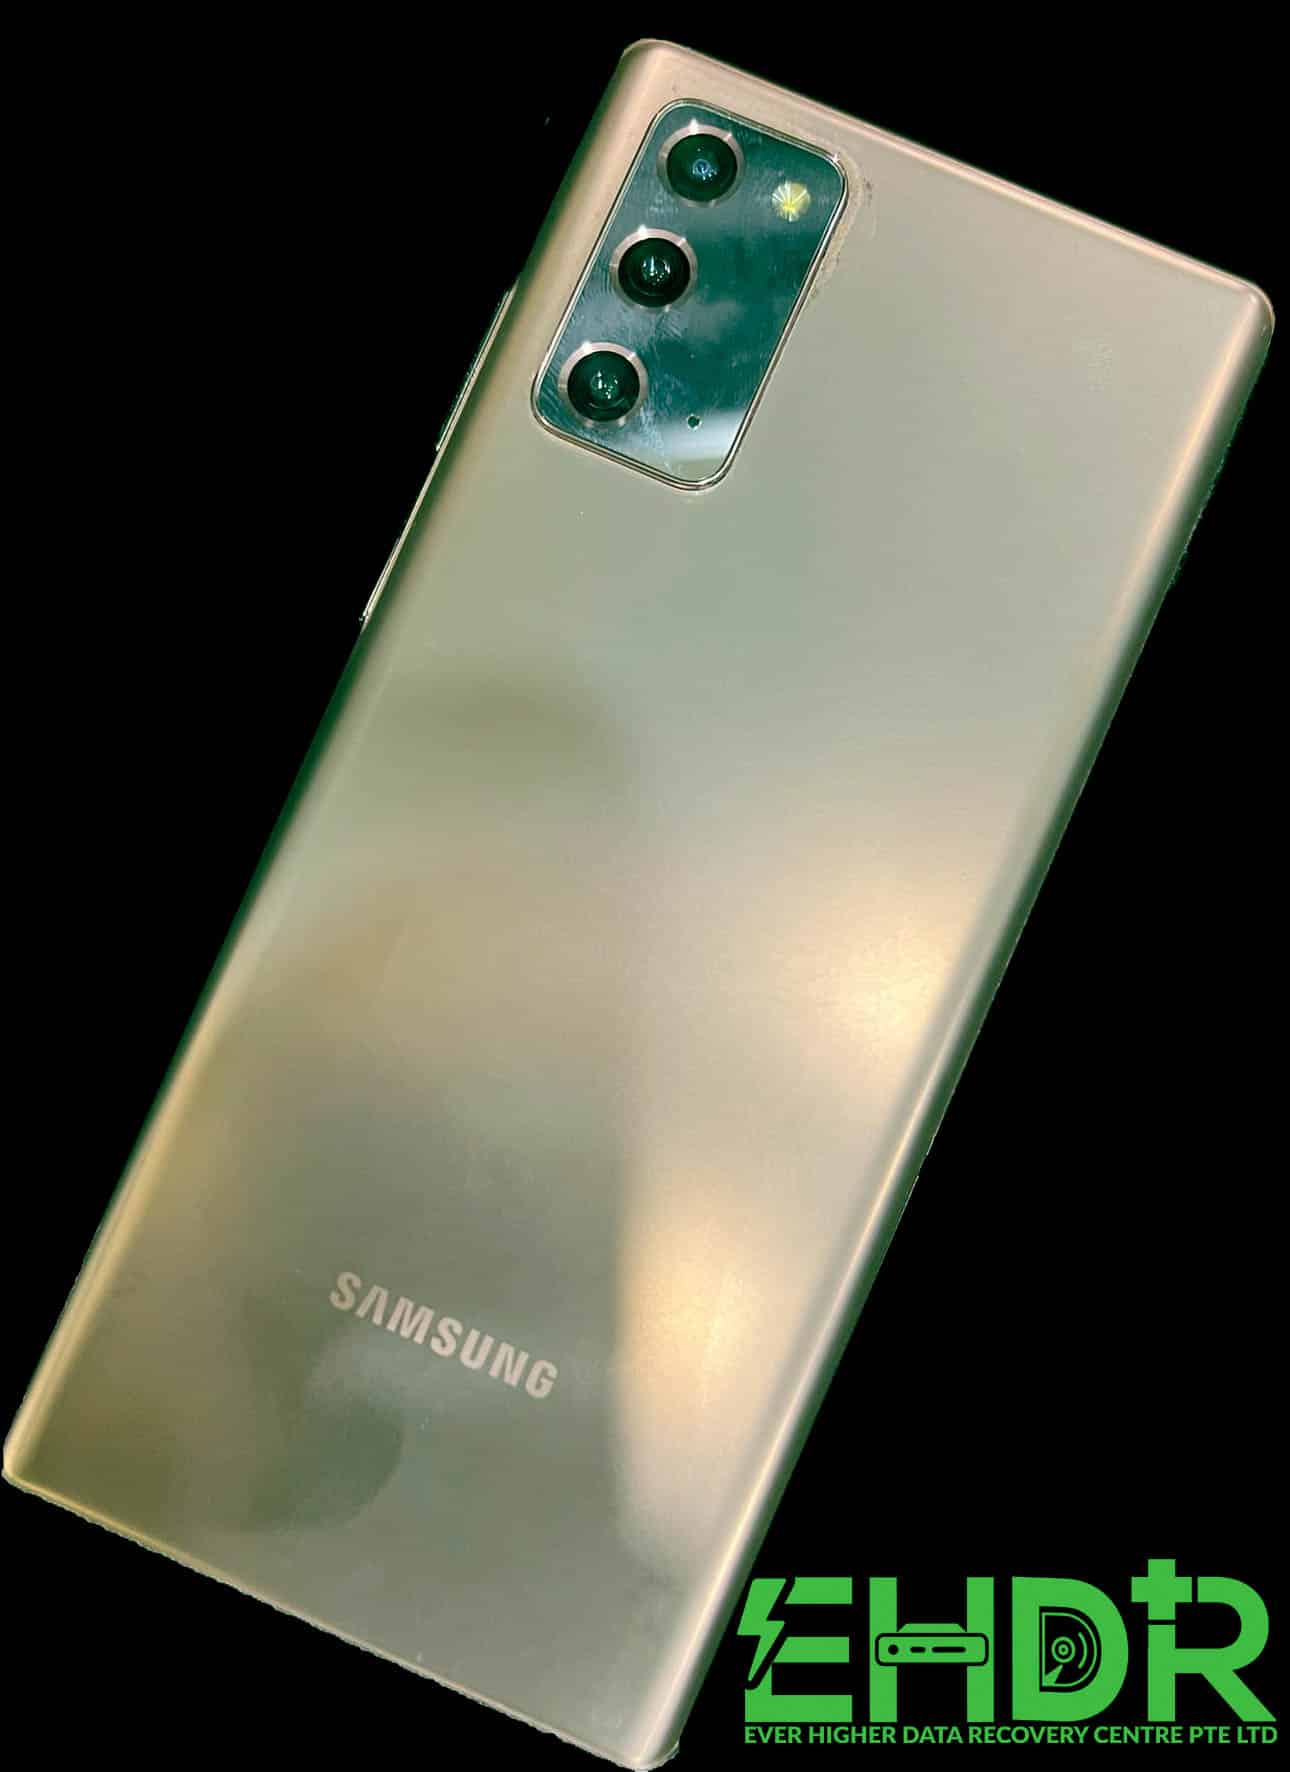 20 October 2022 – Samsung Note 20 Ultra